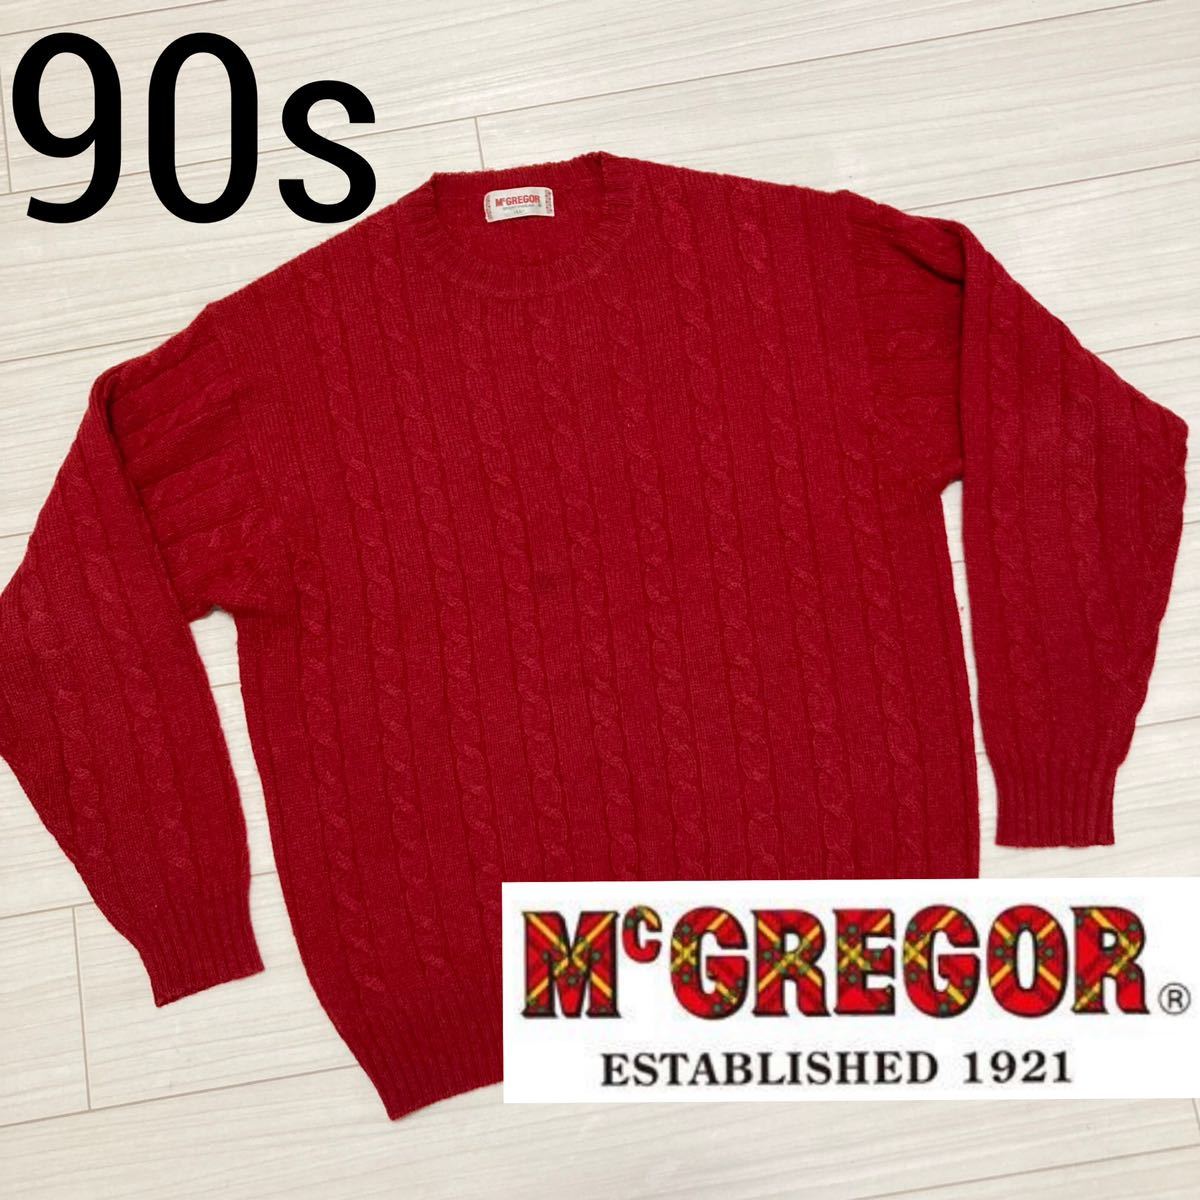 絶妙なデザイン 80s McGREGOR vintage knit マックレガー ニット